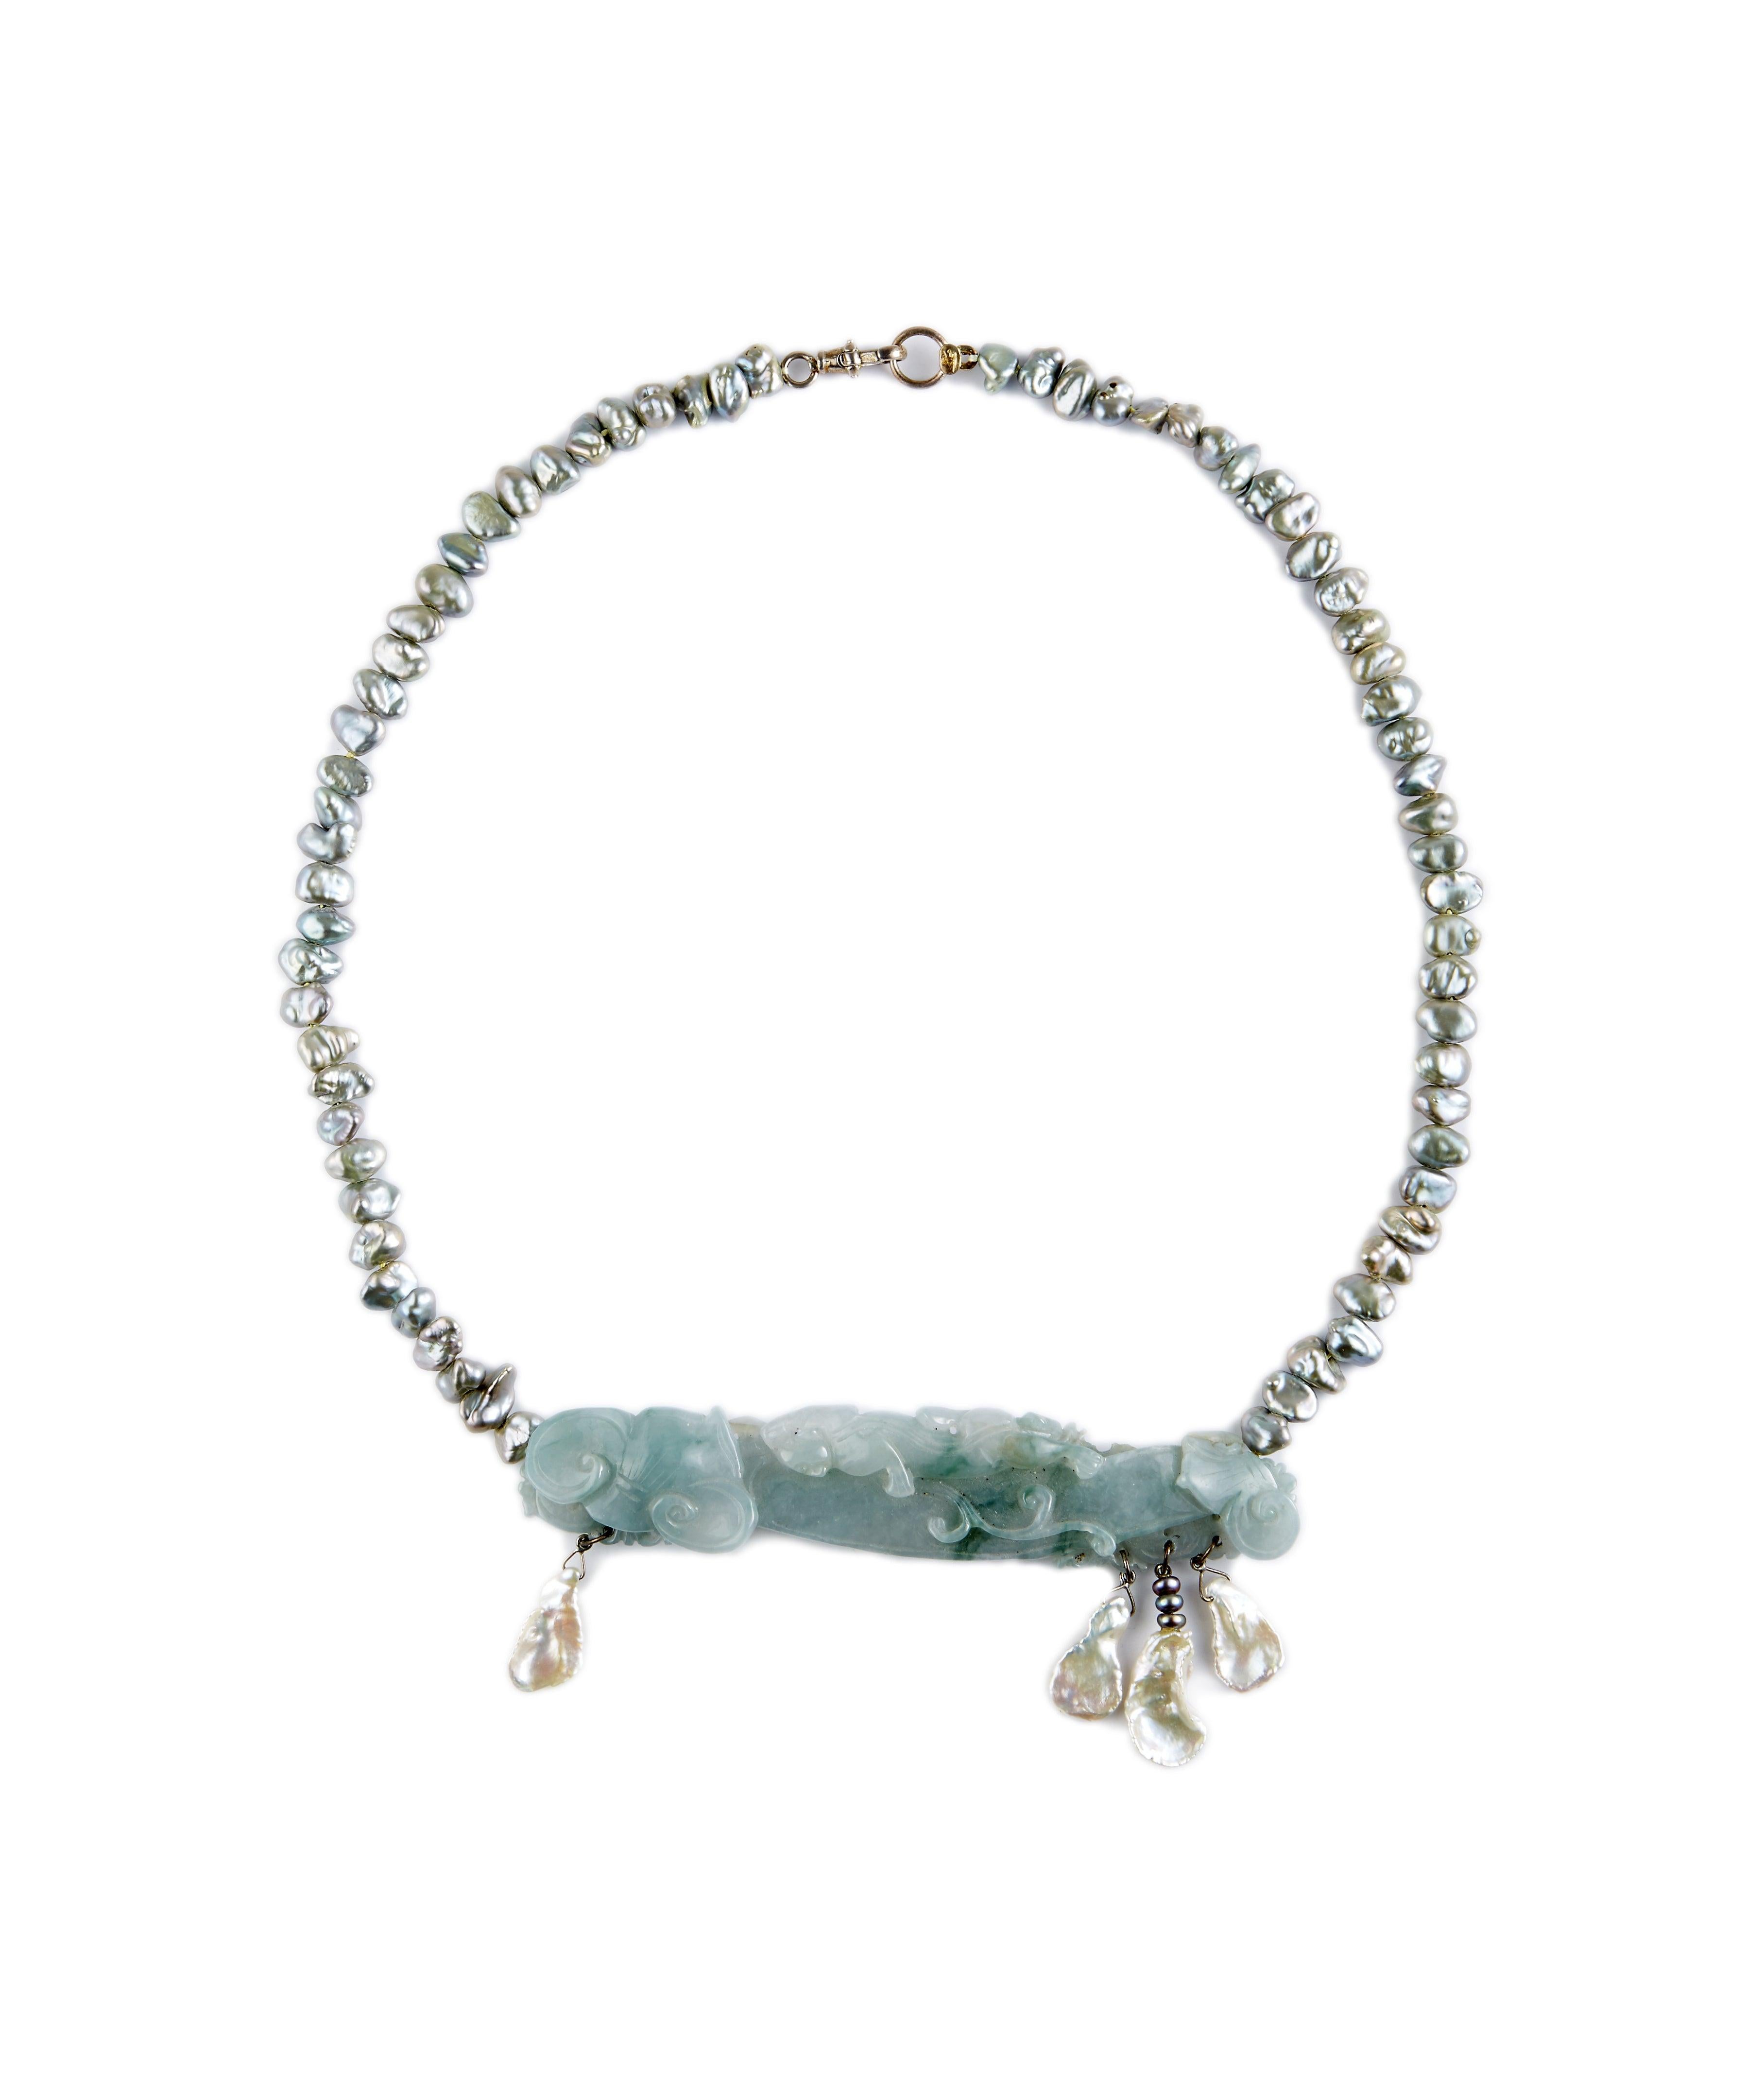 Le jade bleu Erin Mac est la couleur la plus inhabituelle de la jadéite. Celui-ci est doux et attend votre méditation, apportant la paix à votre journée... Sculptée à la main, elle est composée de perles d'eau douce blanches qui pendent d'un rang de